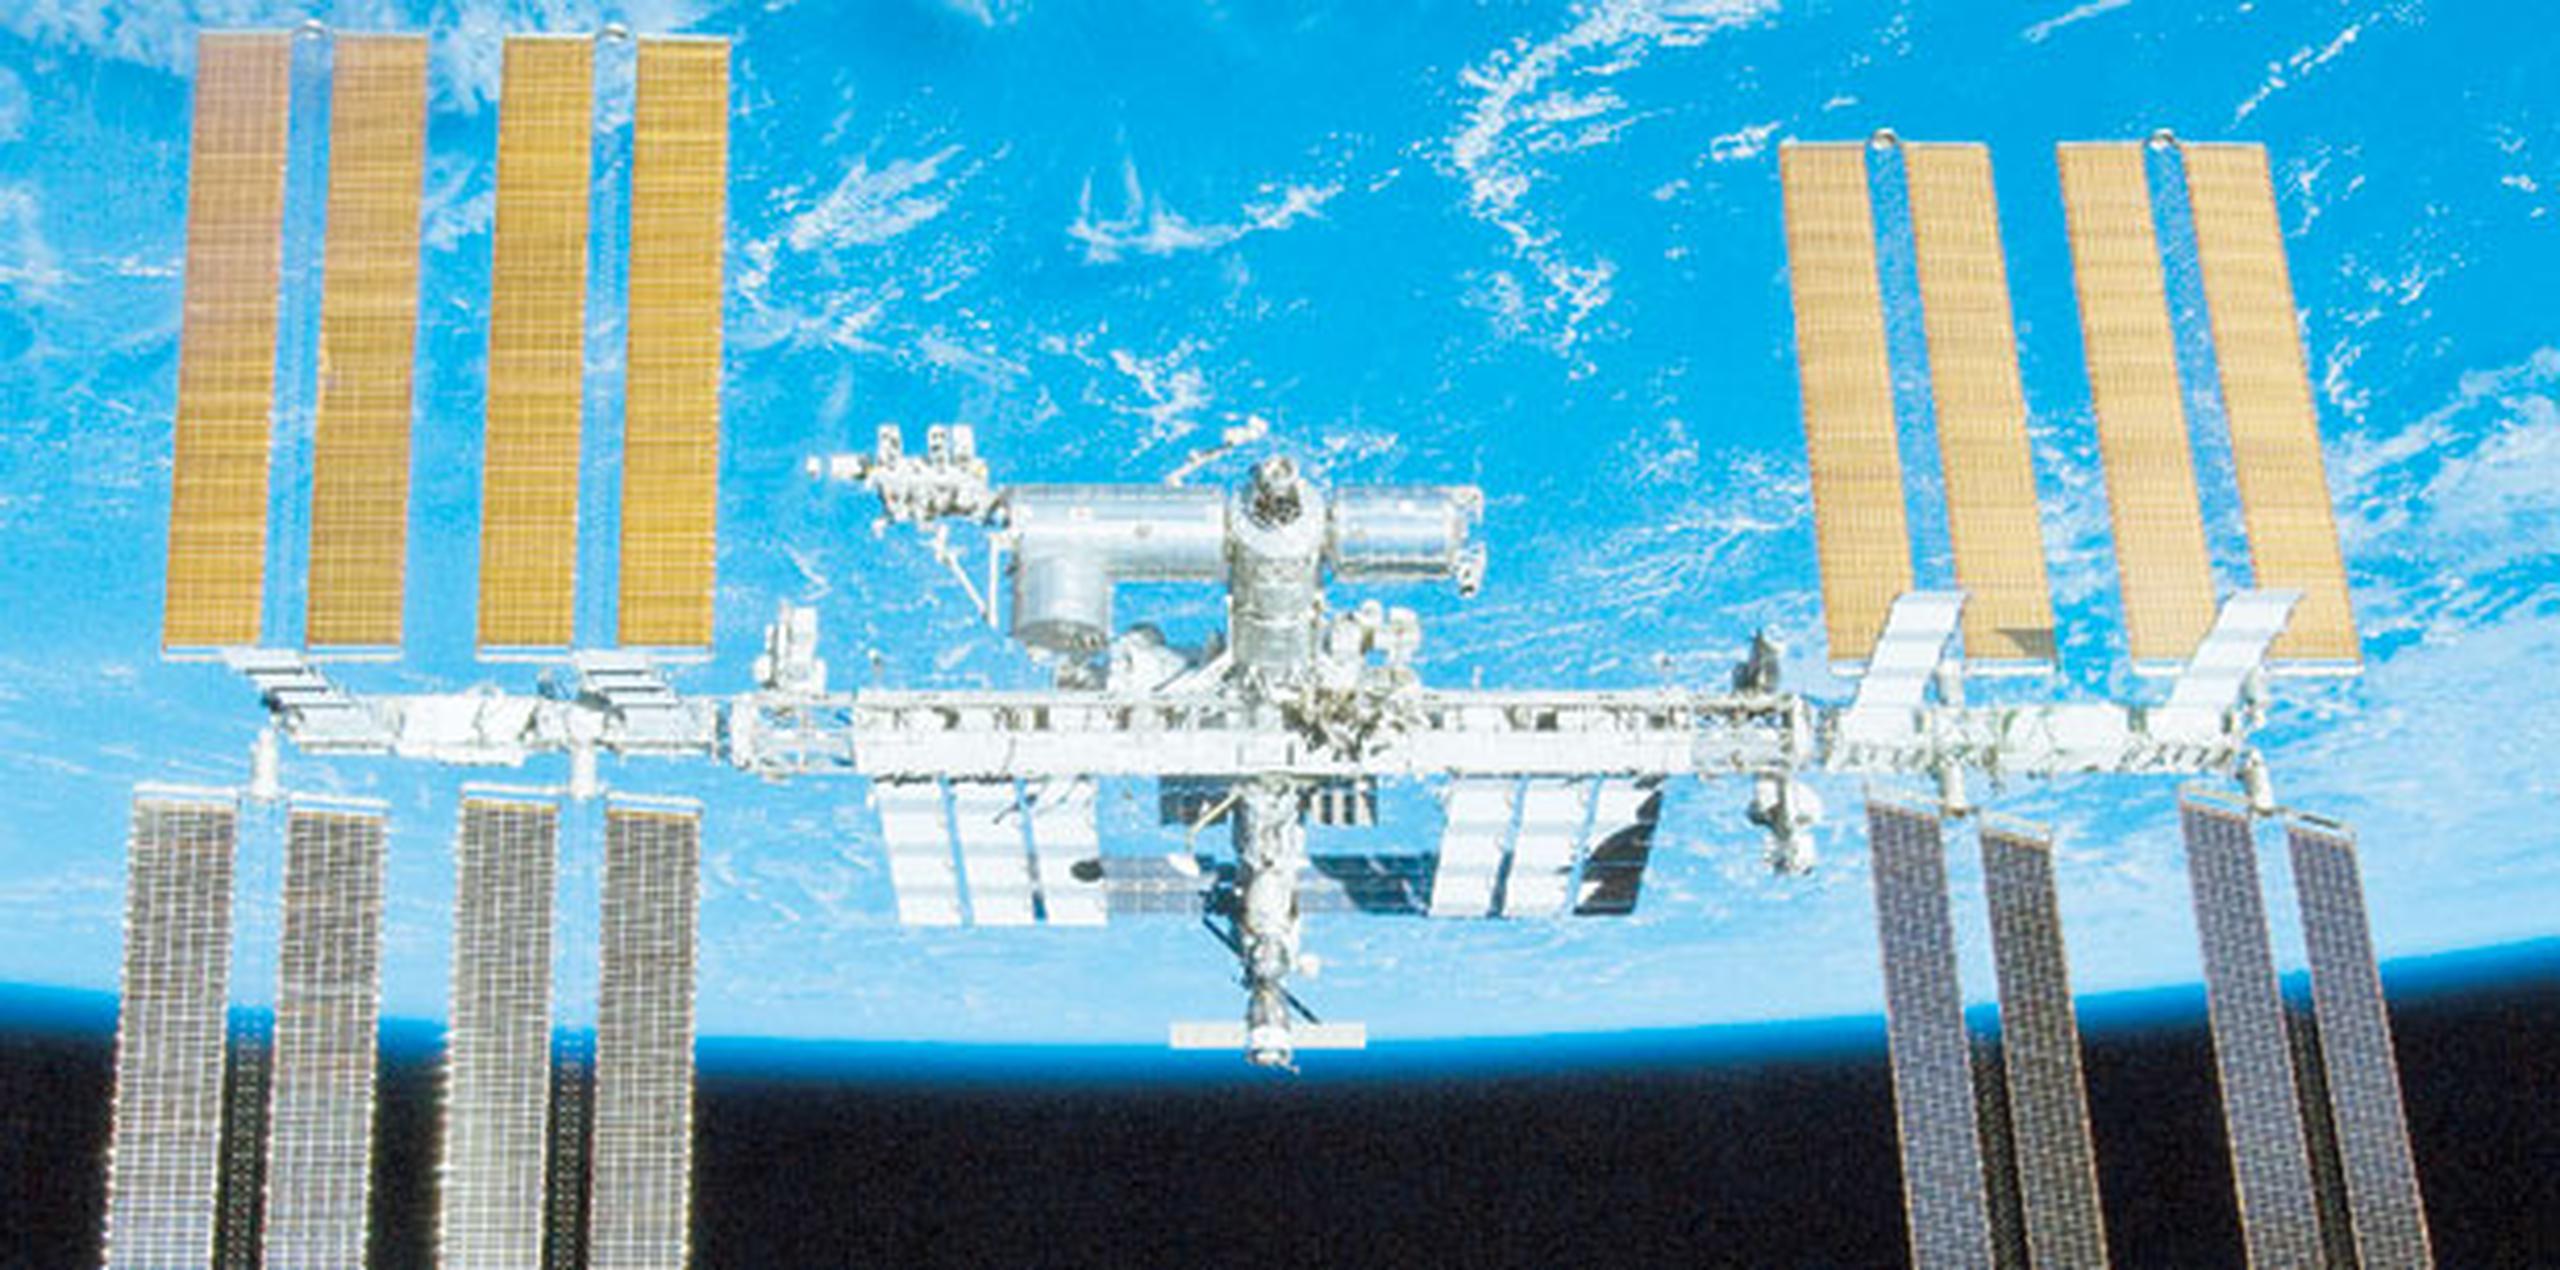 El exastronauta, ahora senador demócrata, insistió en que la exploración espacial es una oportunidad para la colaboración entre los países, y puso como ejemplo la ISS, que ha sido visitada por astronautas de 15 naciones. (Archivo)